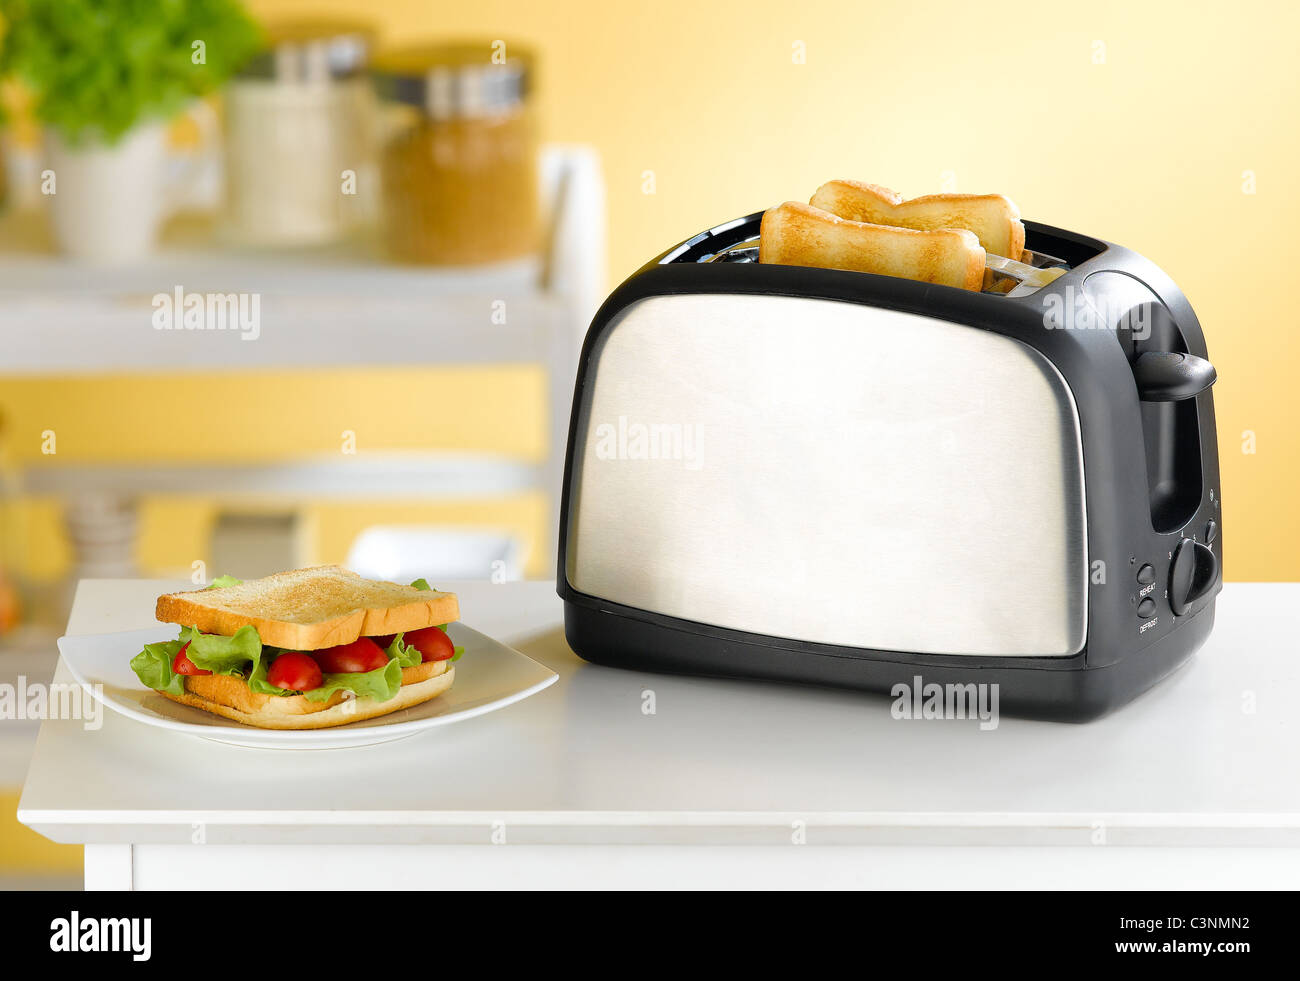 Sandwich tostapane immagini e fotografie stock ad alta risoluzione - Alamy